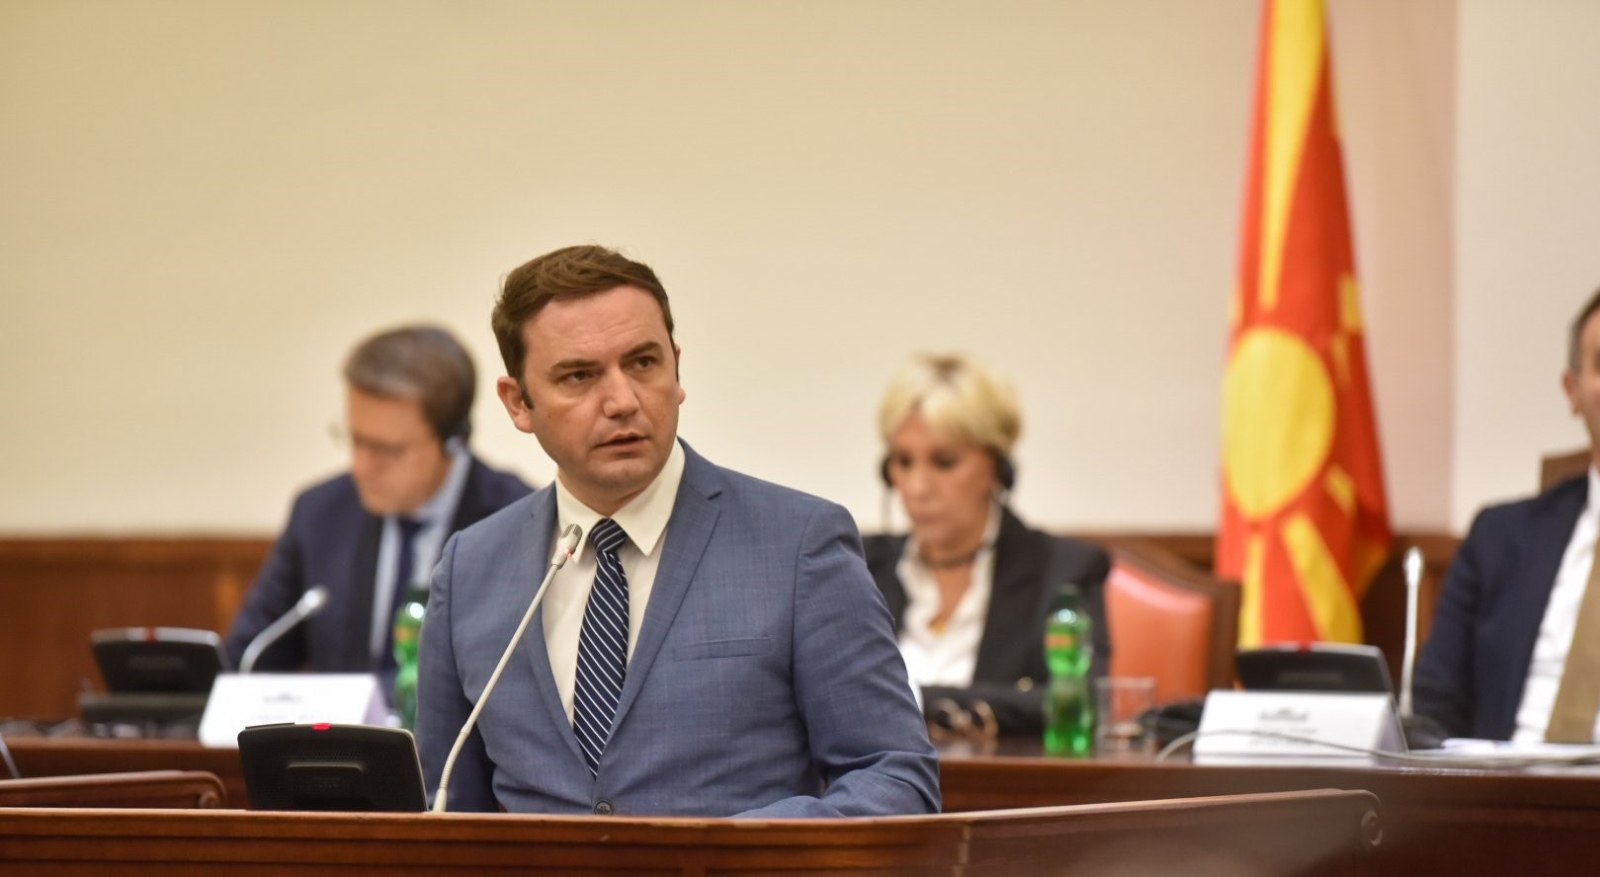 Външният министър на Република Северна Македония Буяр Османи изрази позиция